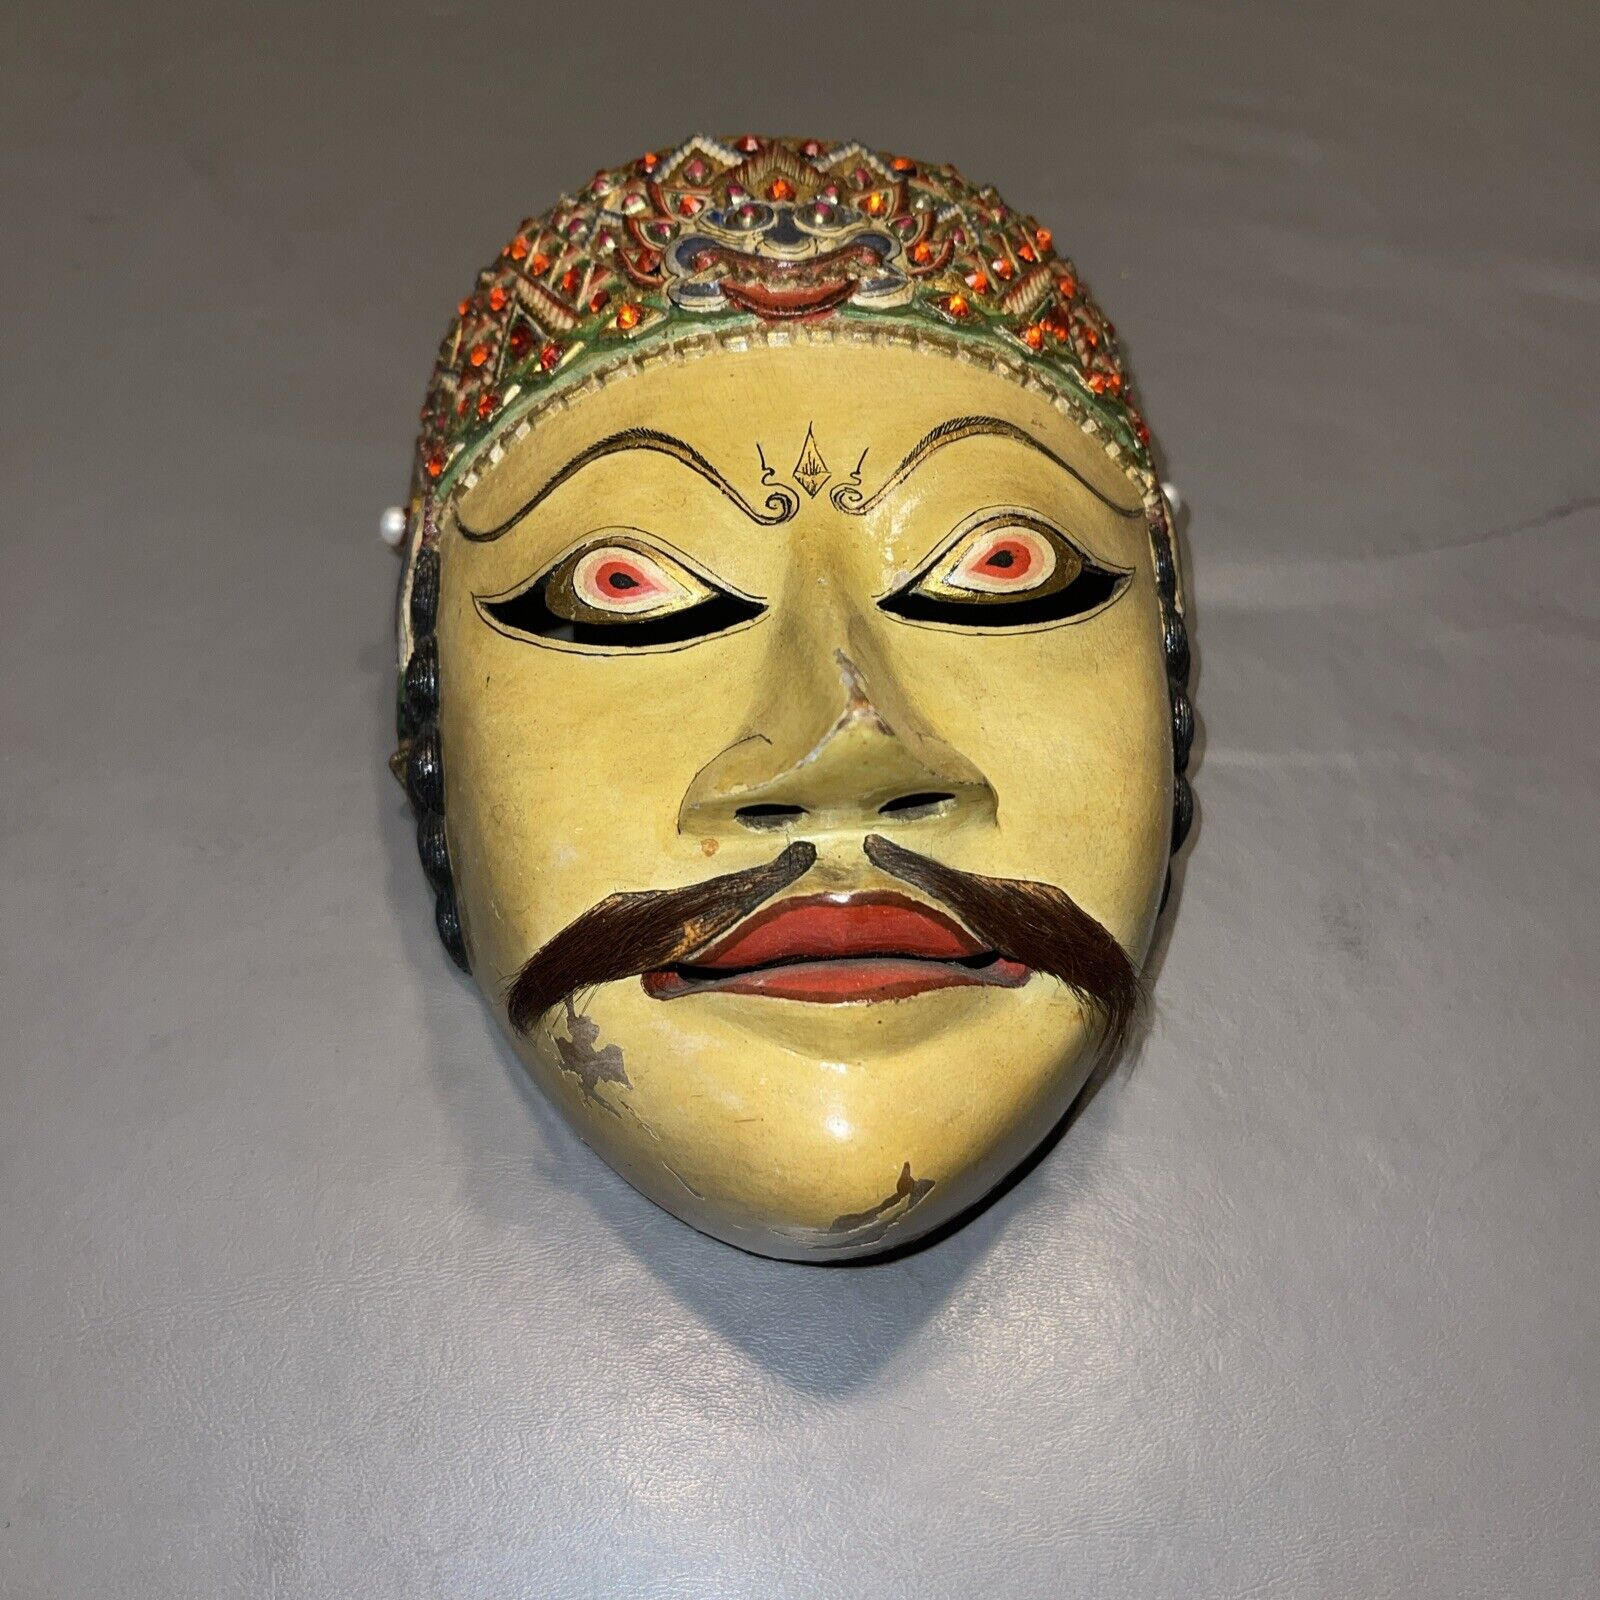 Superb vintage asian mask